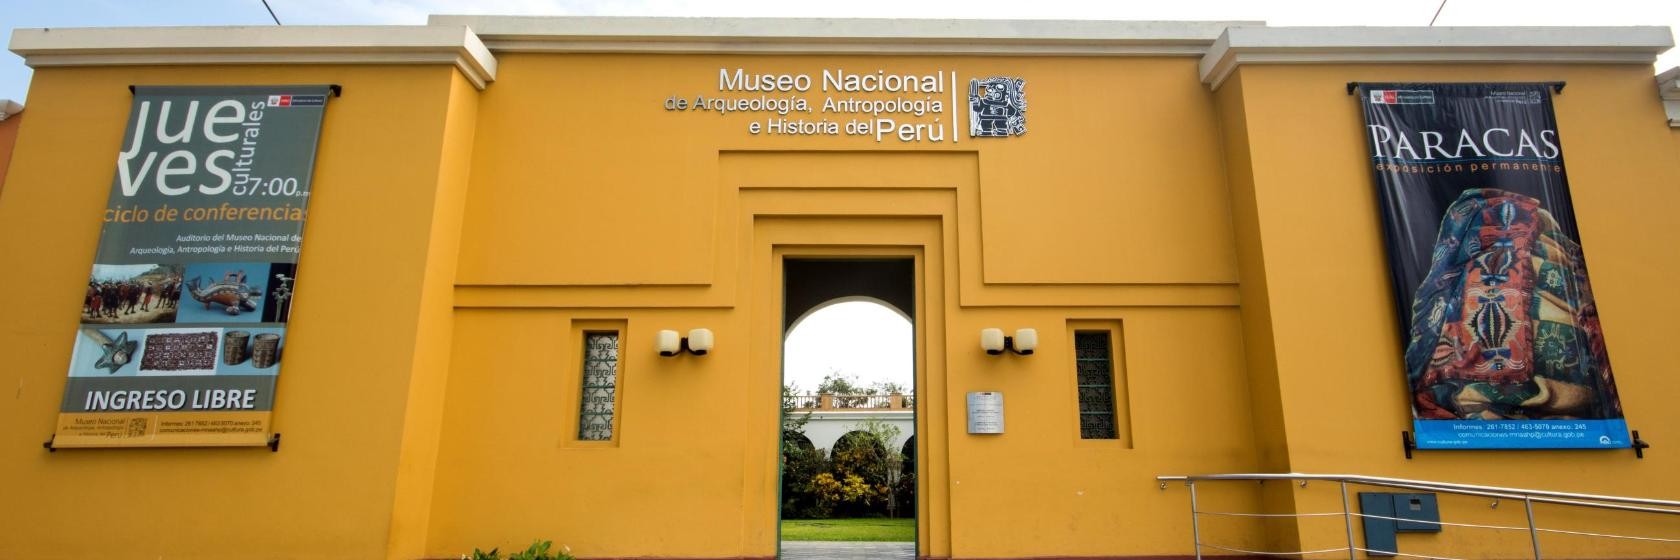 Museo Nacional de Arqueología, Antropología e Historia del Perú | LinkedIn